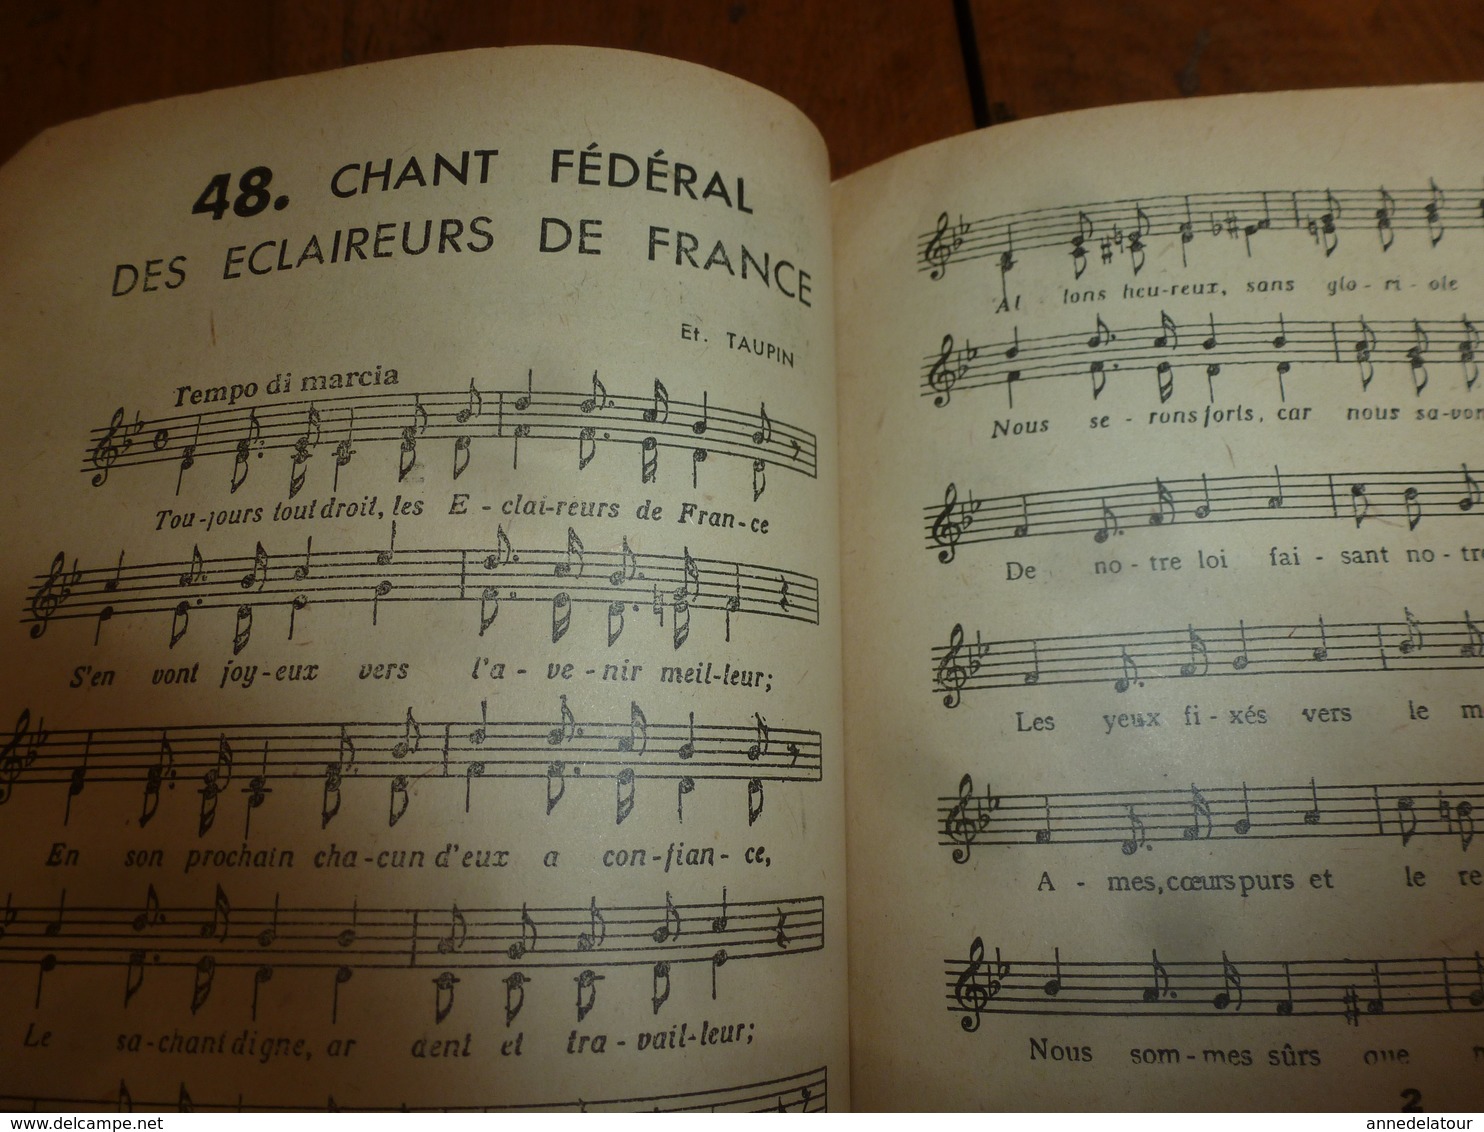 1947 Chansons de marches des SCOUTS, des ECLAIREURS Unionistes de France